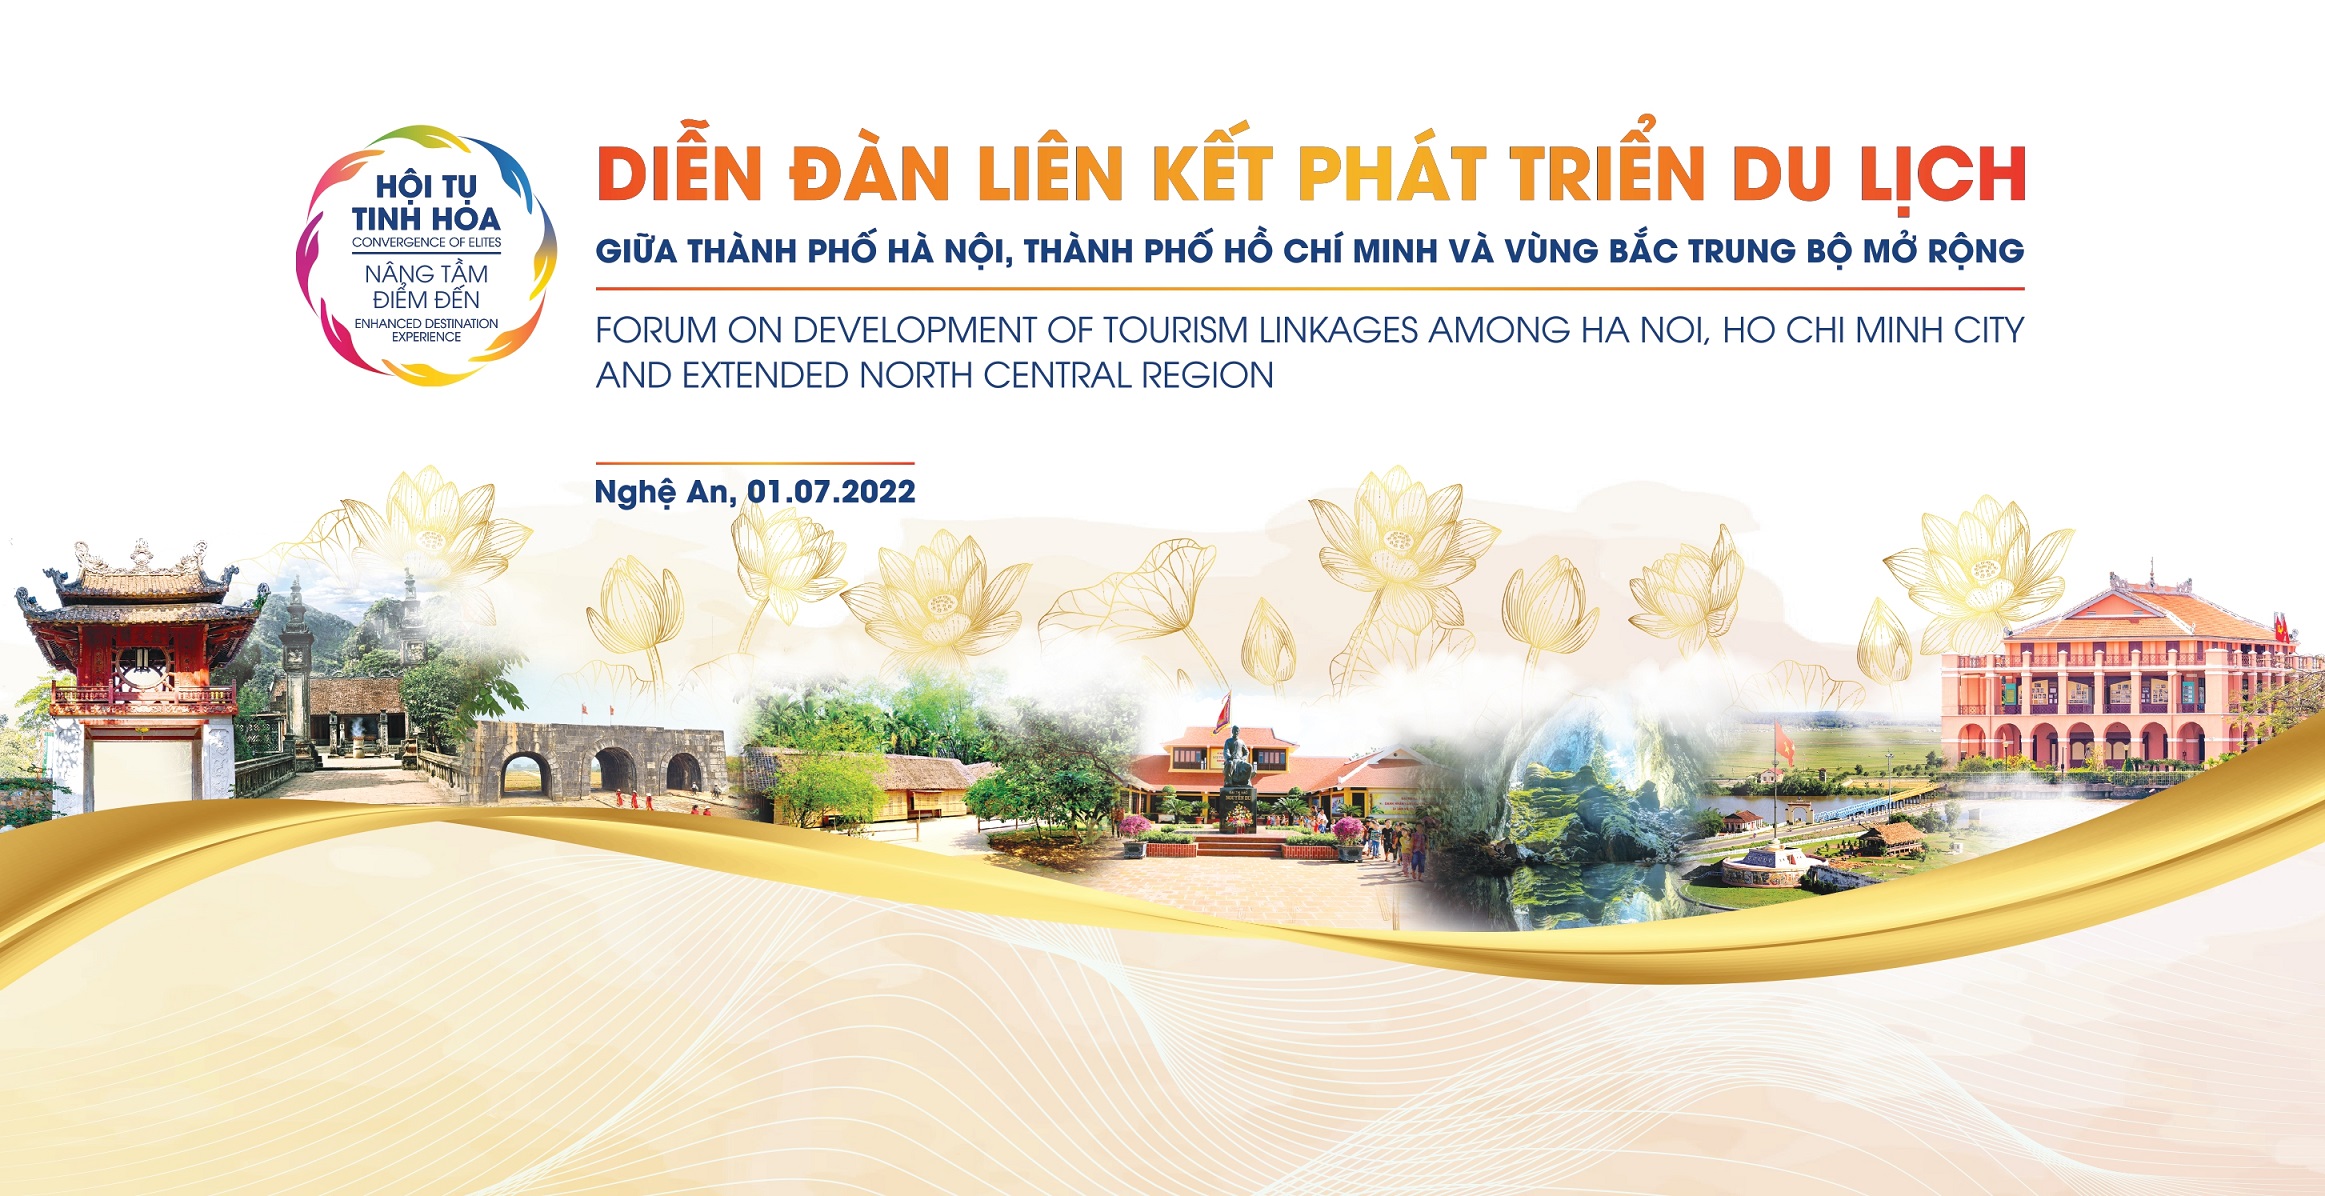 Liên kết phát triển du lịch giữa Hà Nội, Thành phố Hồ Chí Minh và vùng Bắc Trung Bộ mở rộng